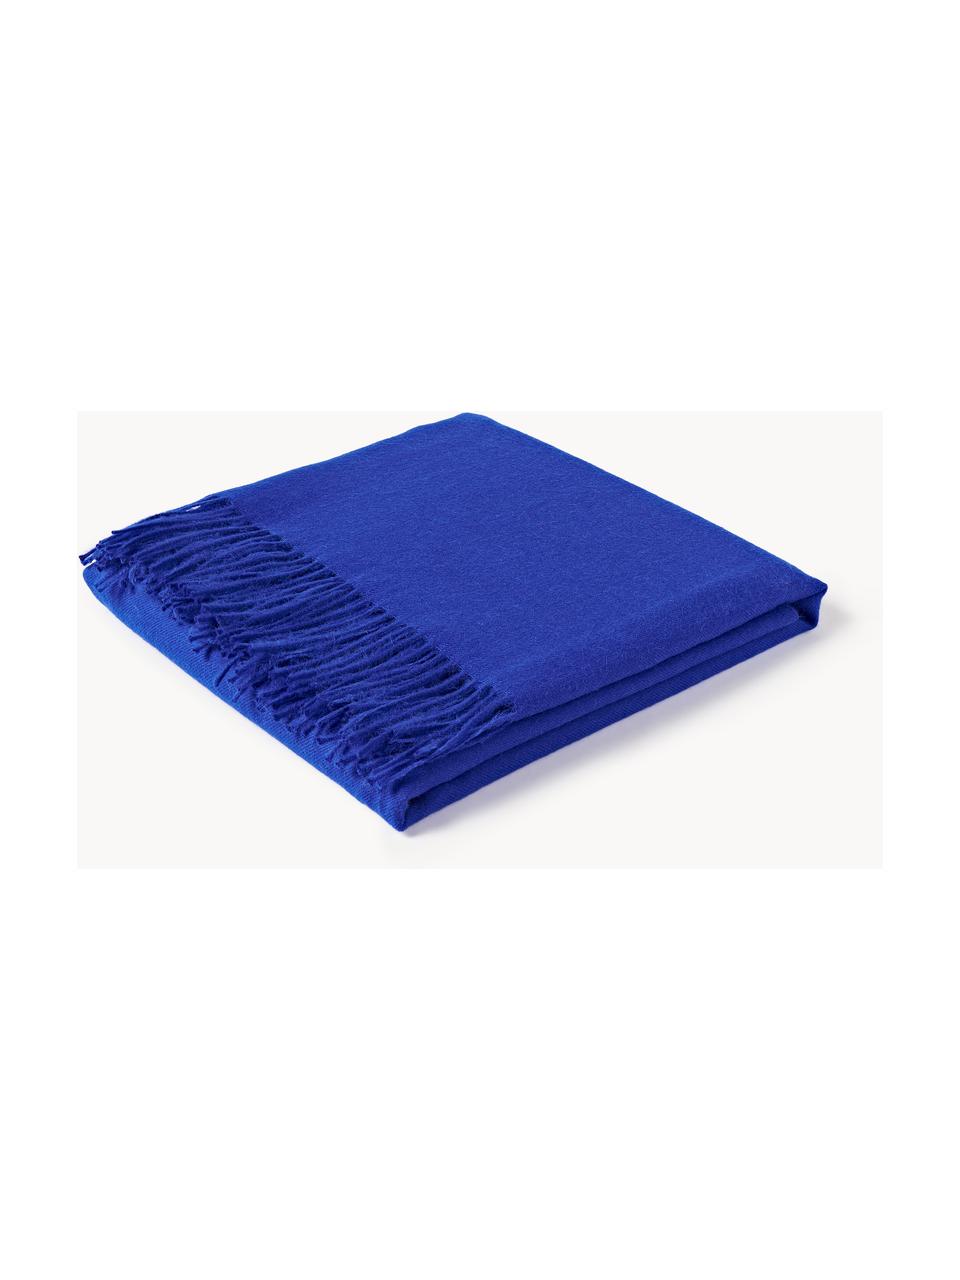 Decke Luxury aus Babyalpaka-Wolle, 100 % Babyalpaka-Wolle

Diese Decke ist aus wunderbar weicher, hochwertiger Babyalpaka-Wolle gewebt. Sie schmeichelt der Haut und spendet wohlige Wärme, ist strapazierfähig aber dennoch leicht und besitzt hervorragende temperaturregulierende Eigenschaften. Dadurch ist diese Decke der perfekte Begleiter für kühle Sommerabende ebenso wie kalte Wintertage., Royalblau, B 130 x L 200 cm